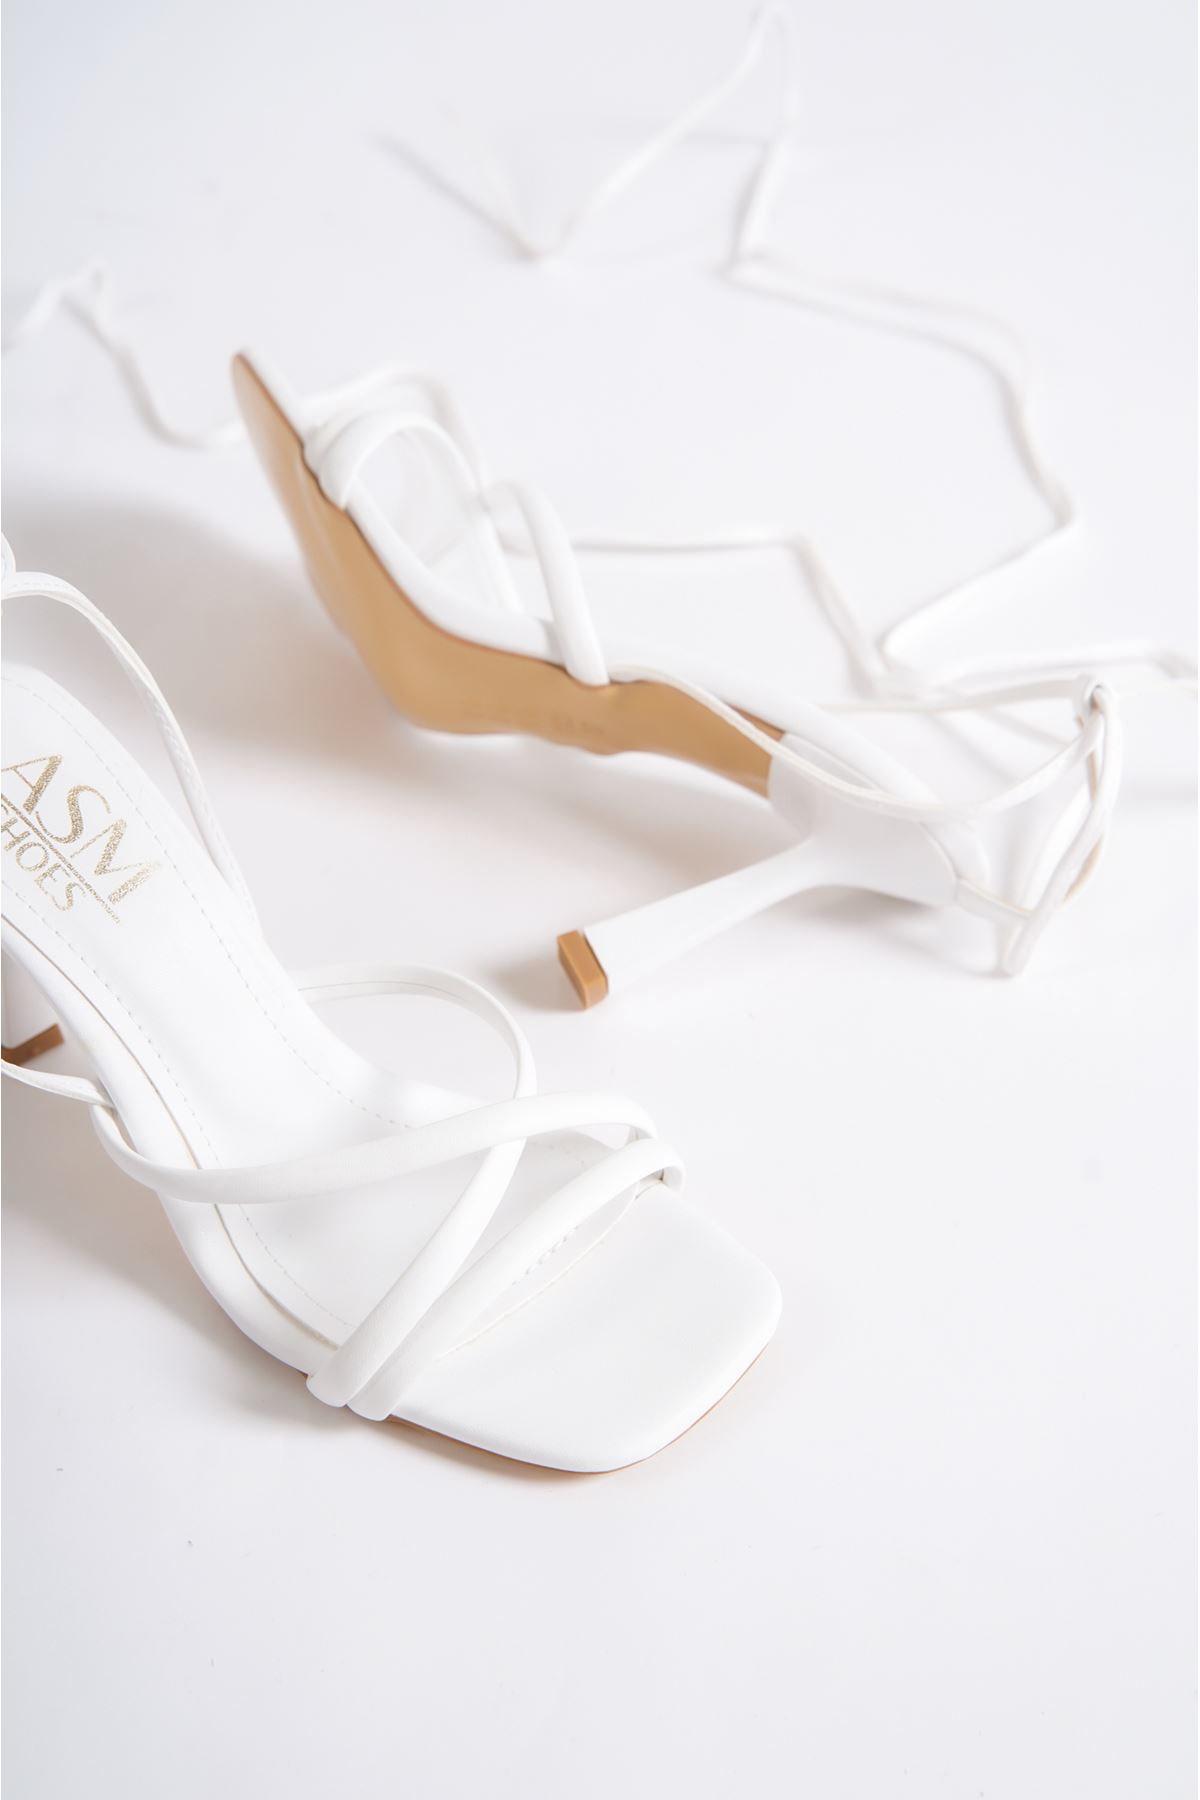 Henri Beyaz Mat Deri Topuklu Kadın Ayakkabı